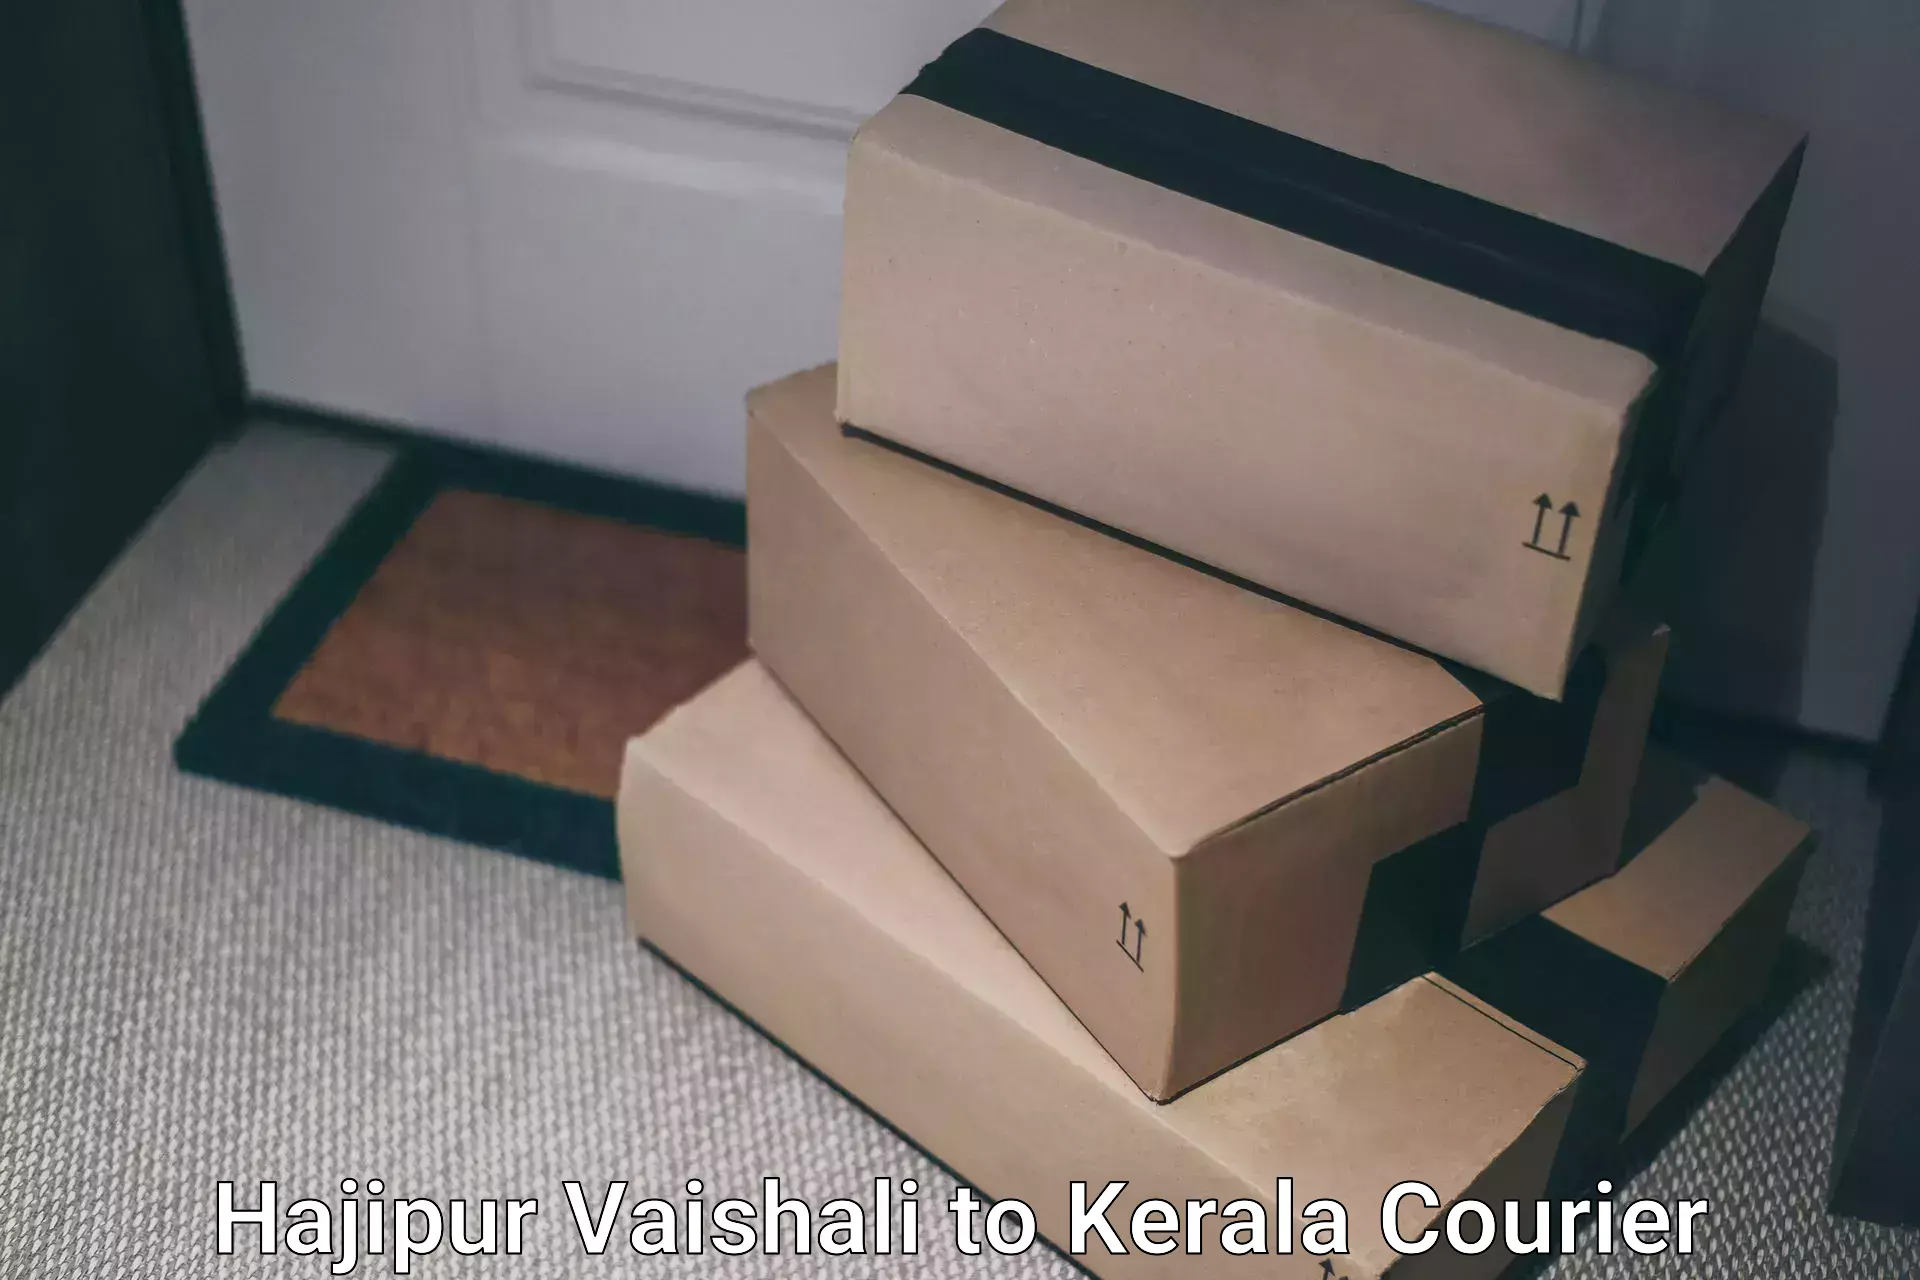 Modern delivery methods Hajipur Vaishali to Kunnamkulam